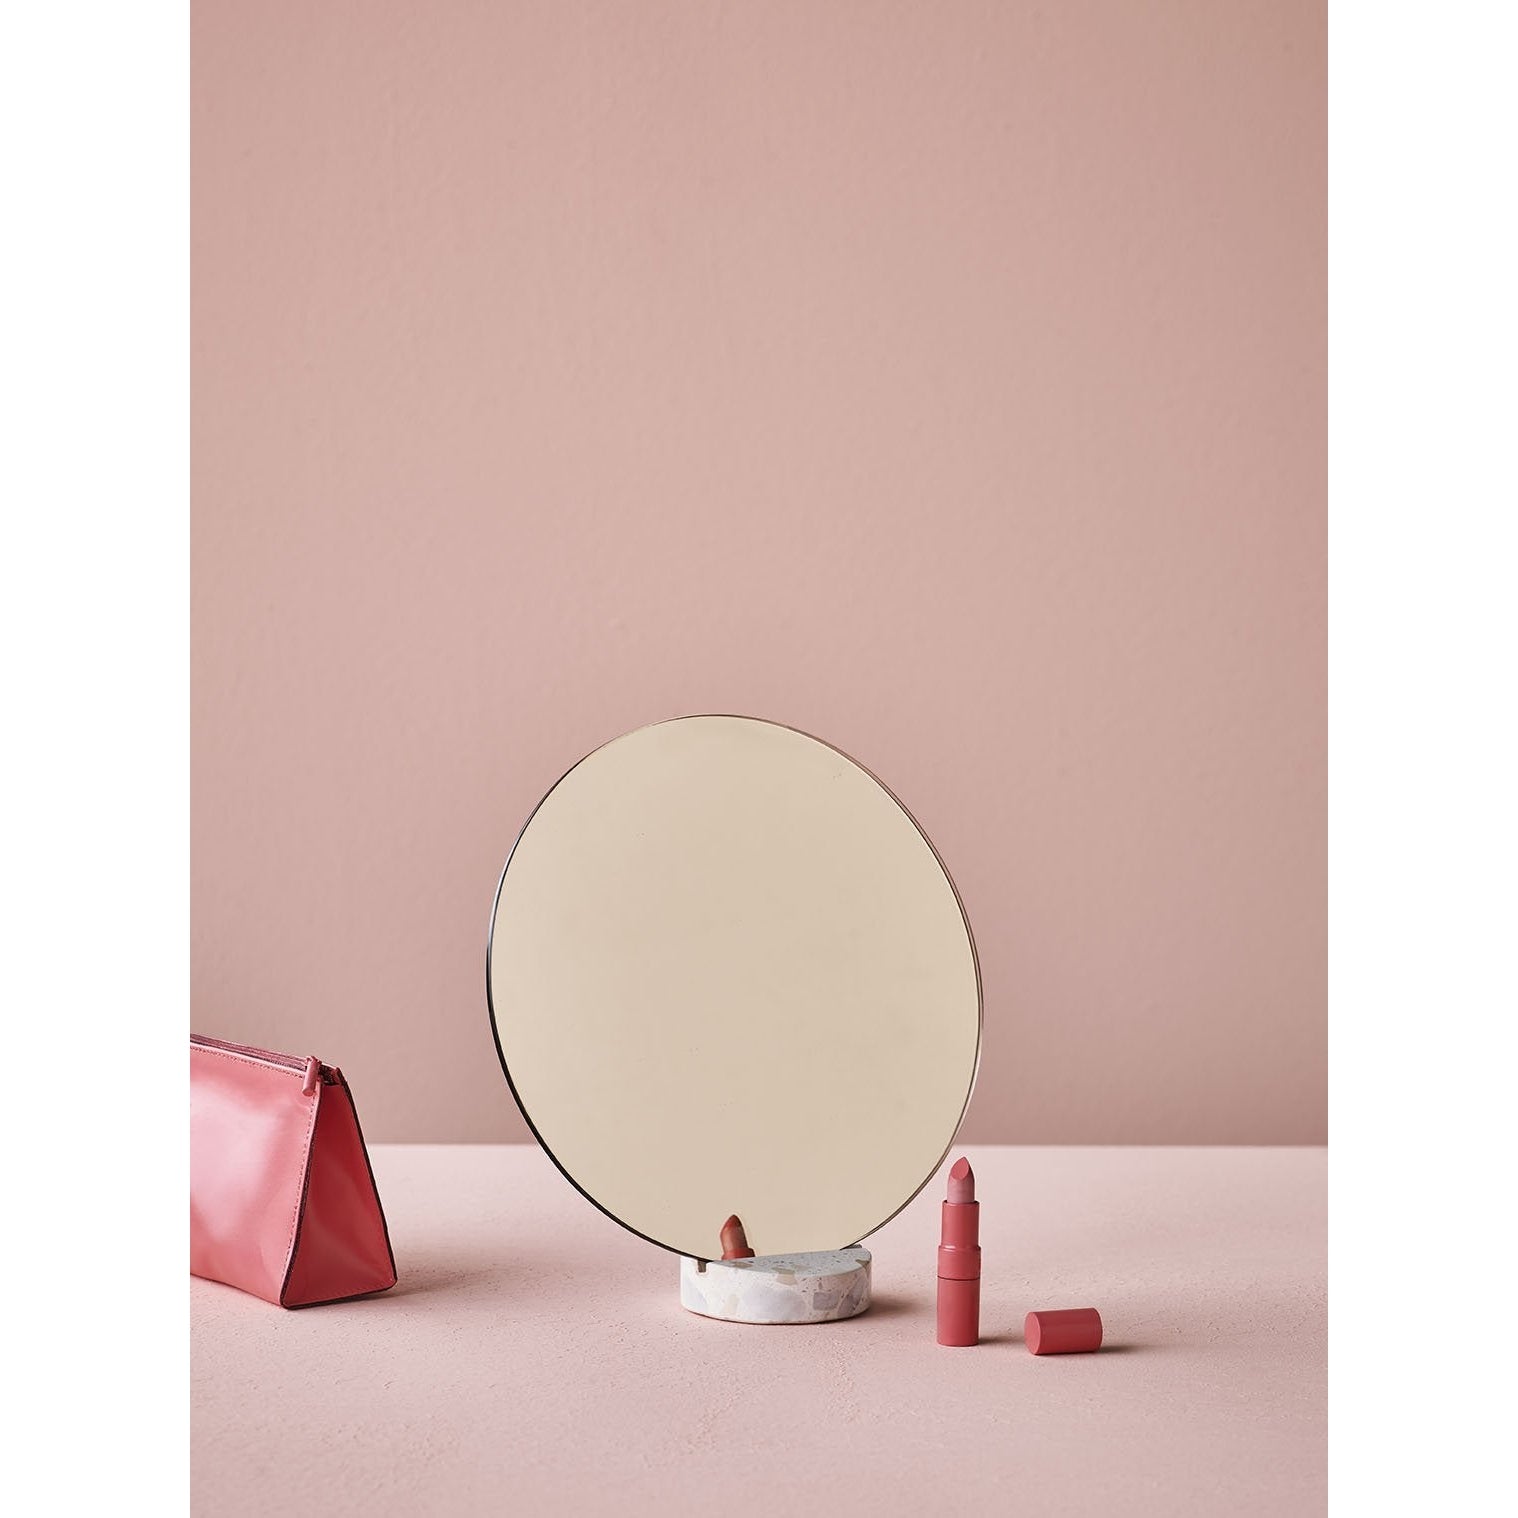 Lucie Kaas Erat Mirror Pink, ø 25cm